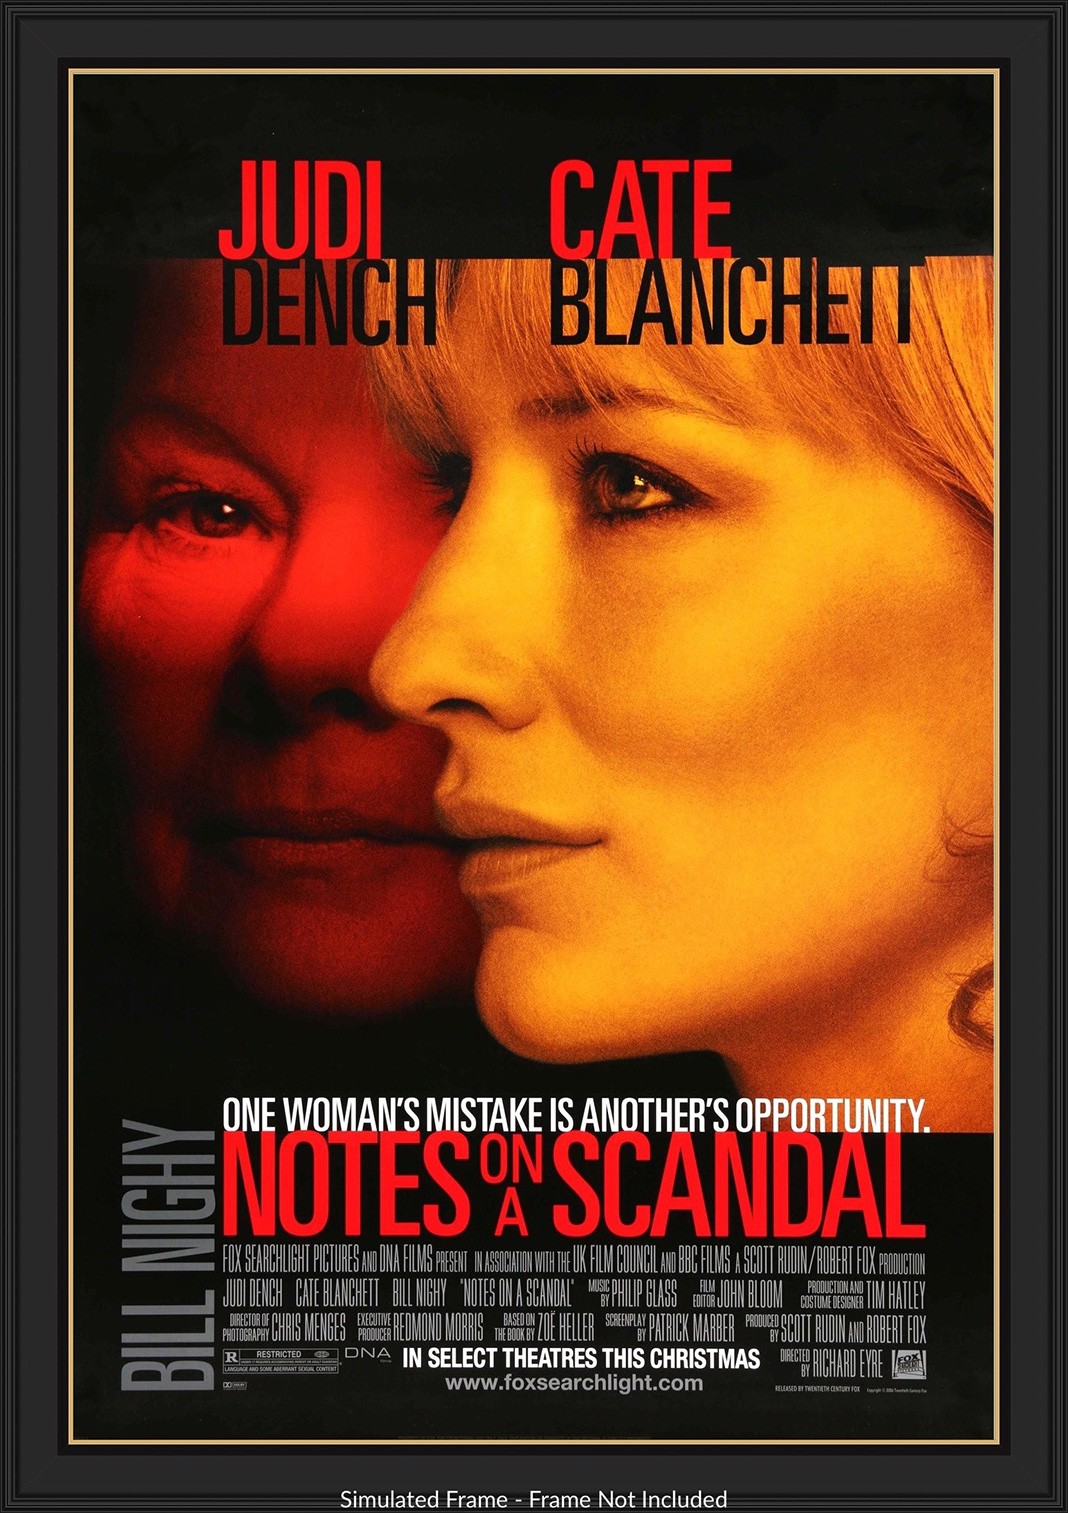 Джуди Денч, Кейт Бланшетт на постере к фильму «Скандальный дневник»